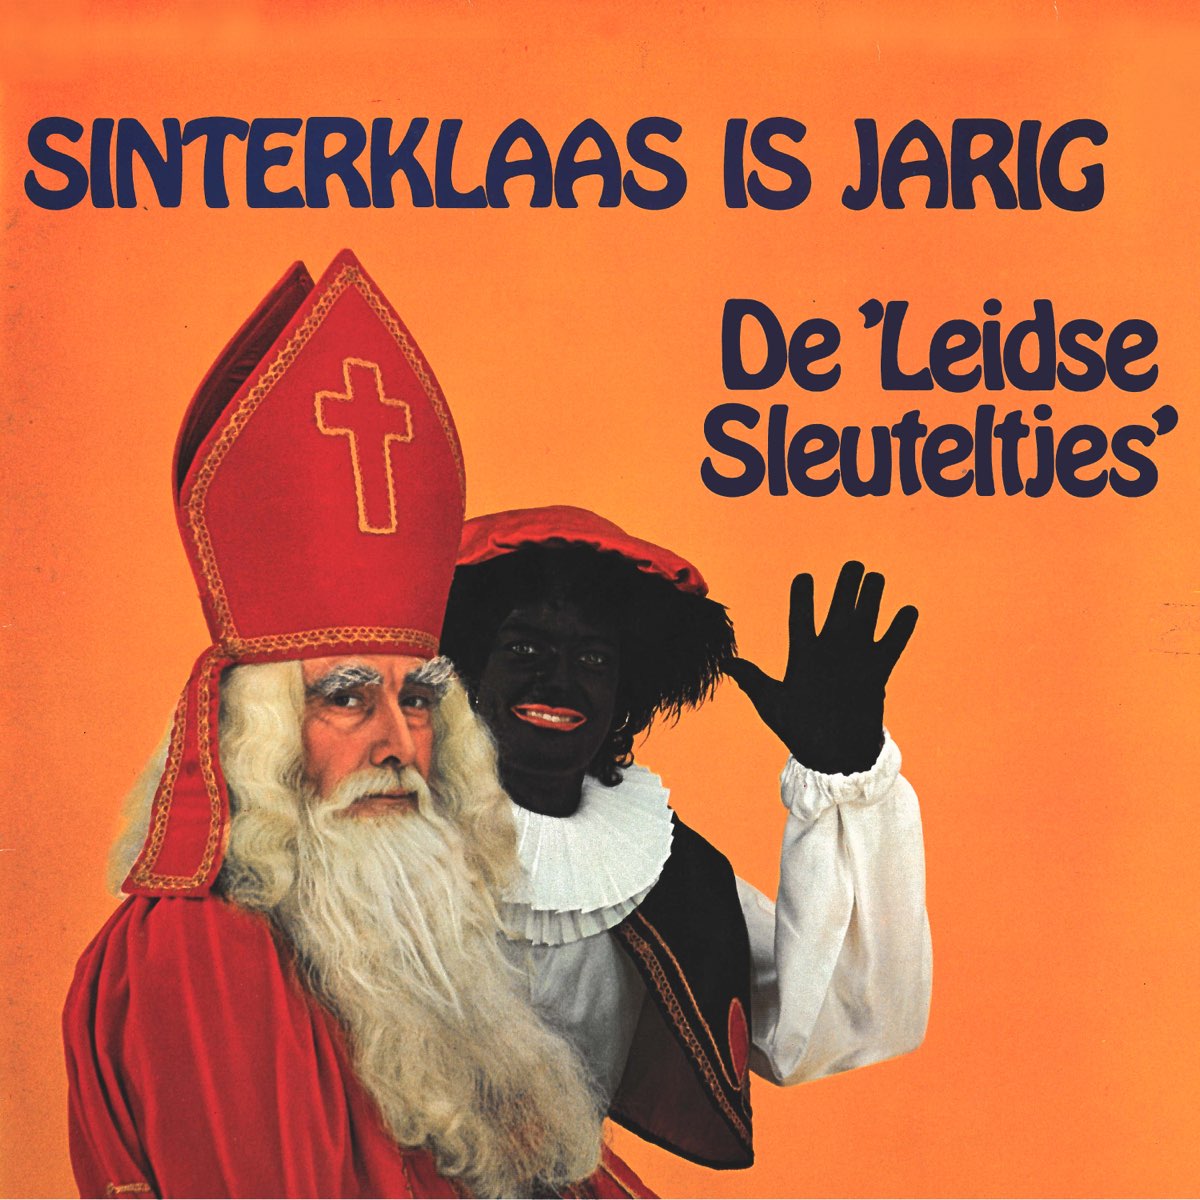 Sinterklaas Is Jarig by Kinderkoor 'De Leidse Sleuteltjes' on Apple Music